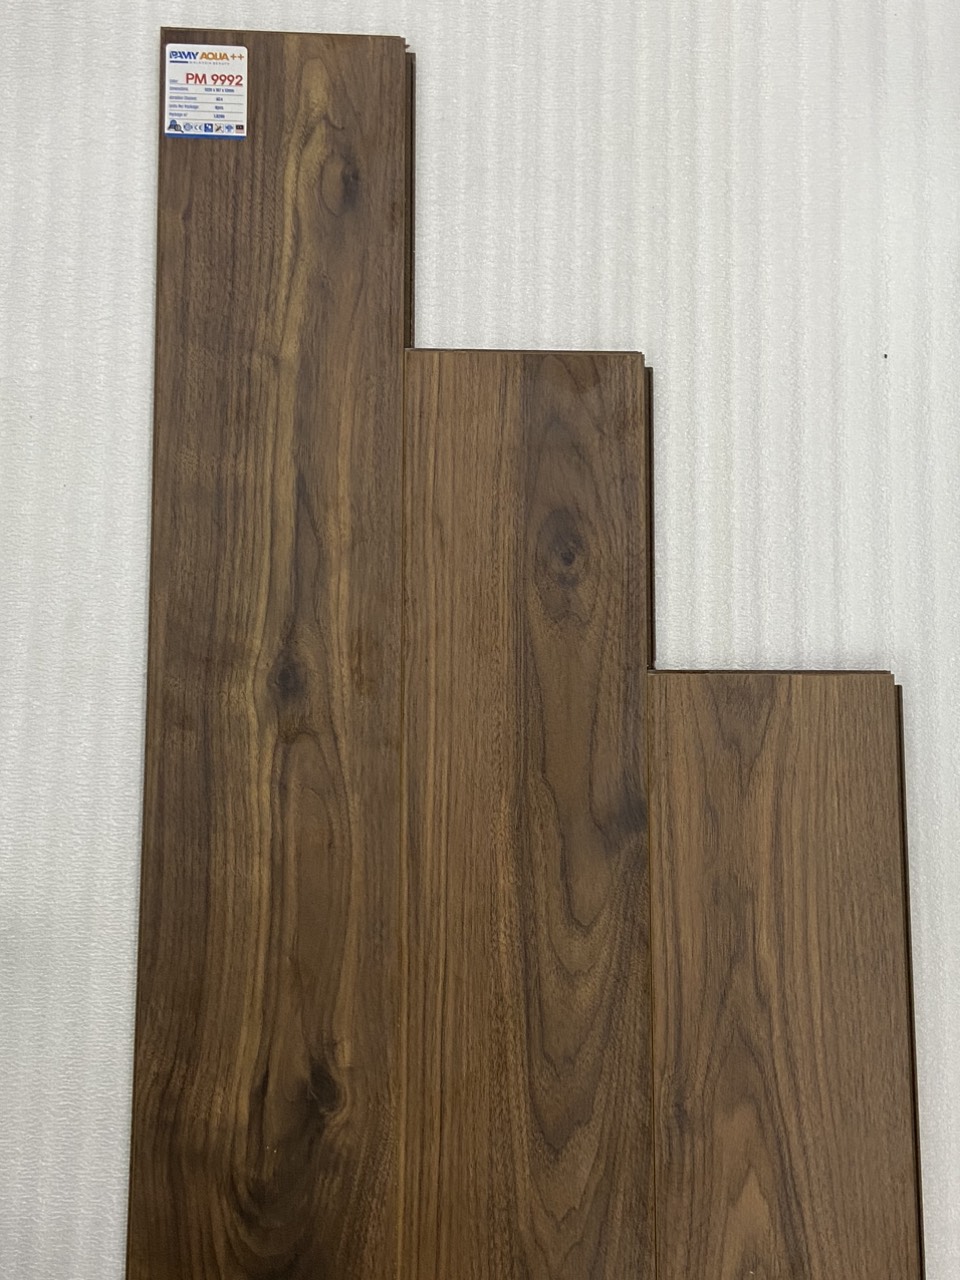 sàn gỗ pamy aqua ++ PM 9992